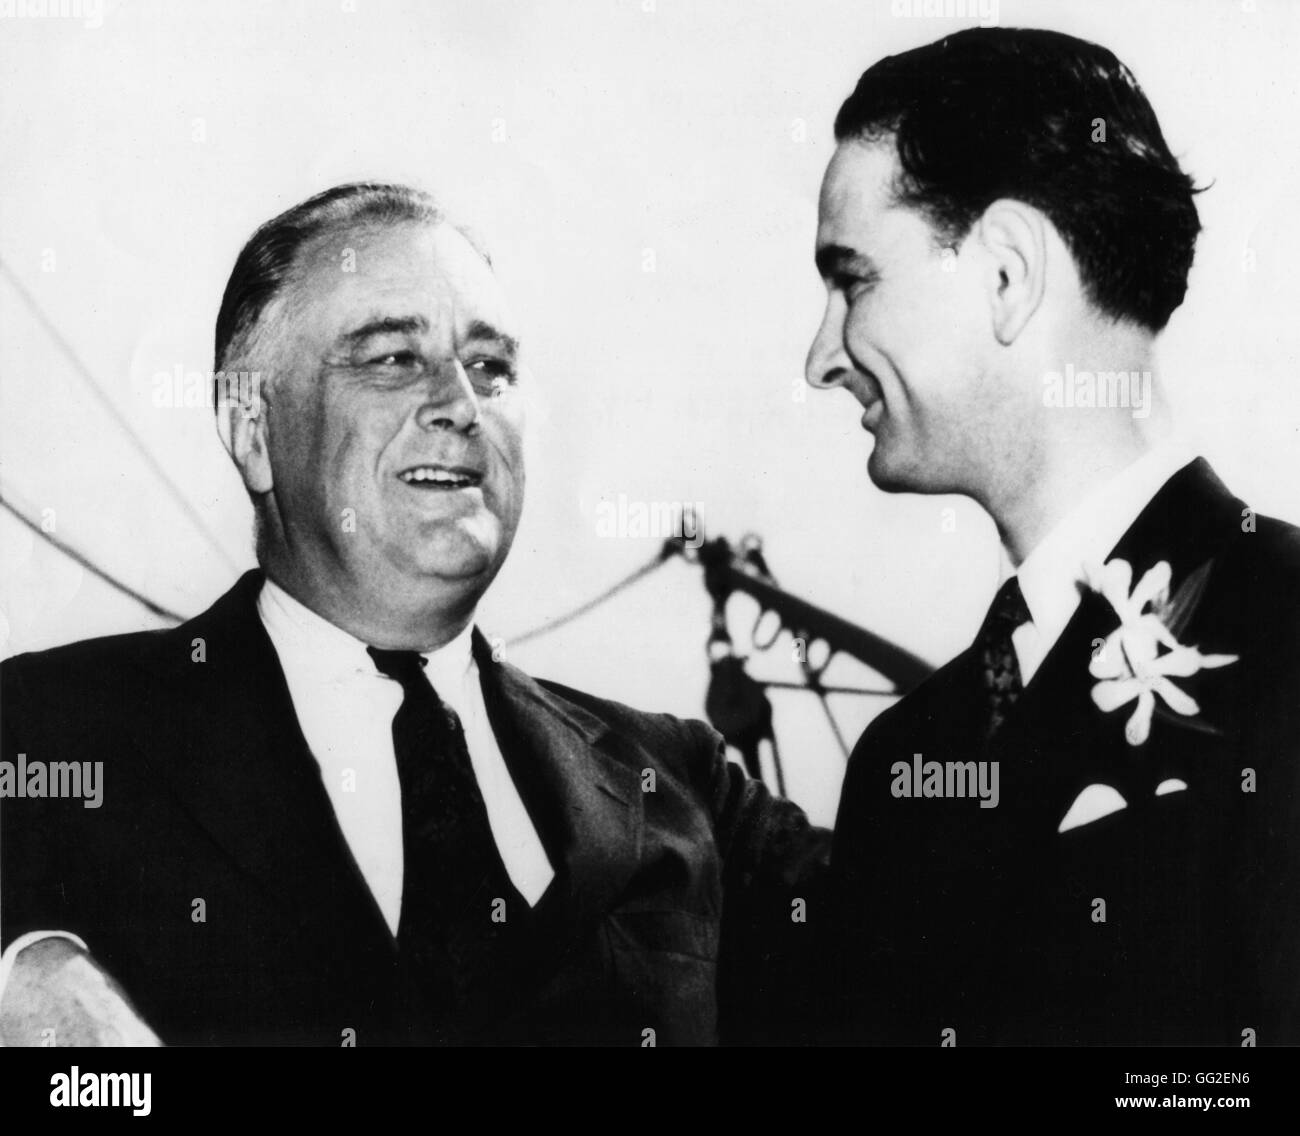 El Presidente Roosevelt y L. Johnson, quien fue miembro del Congreso americano, en Galveston. De mayo de 1937 Estados Unidos Foto de stock